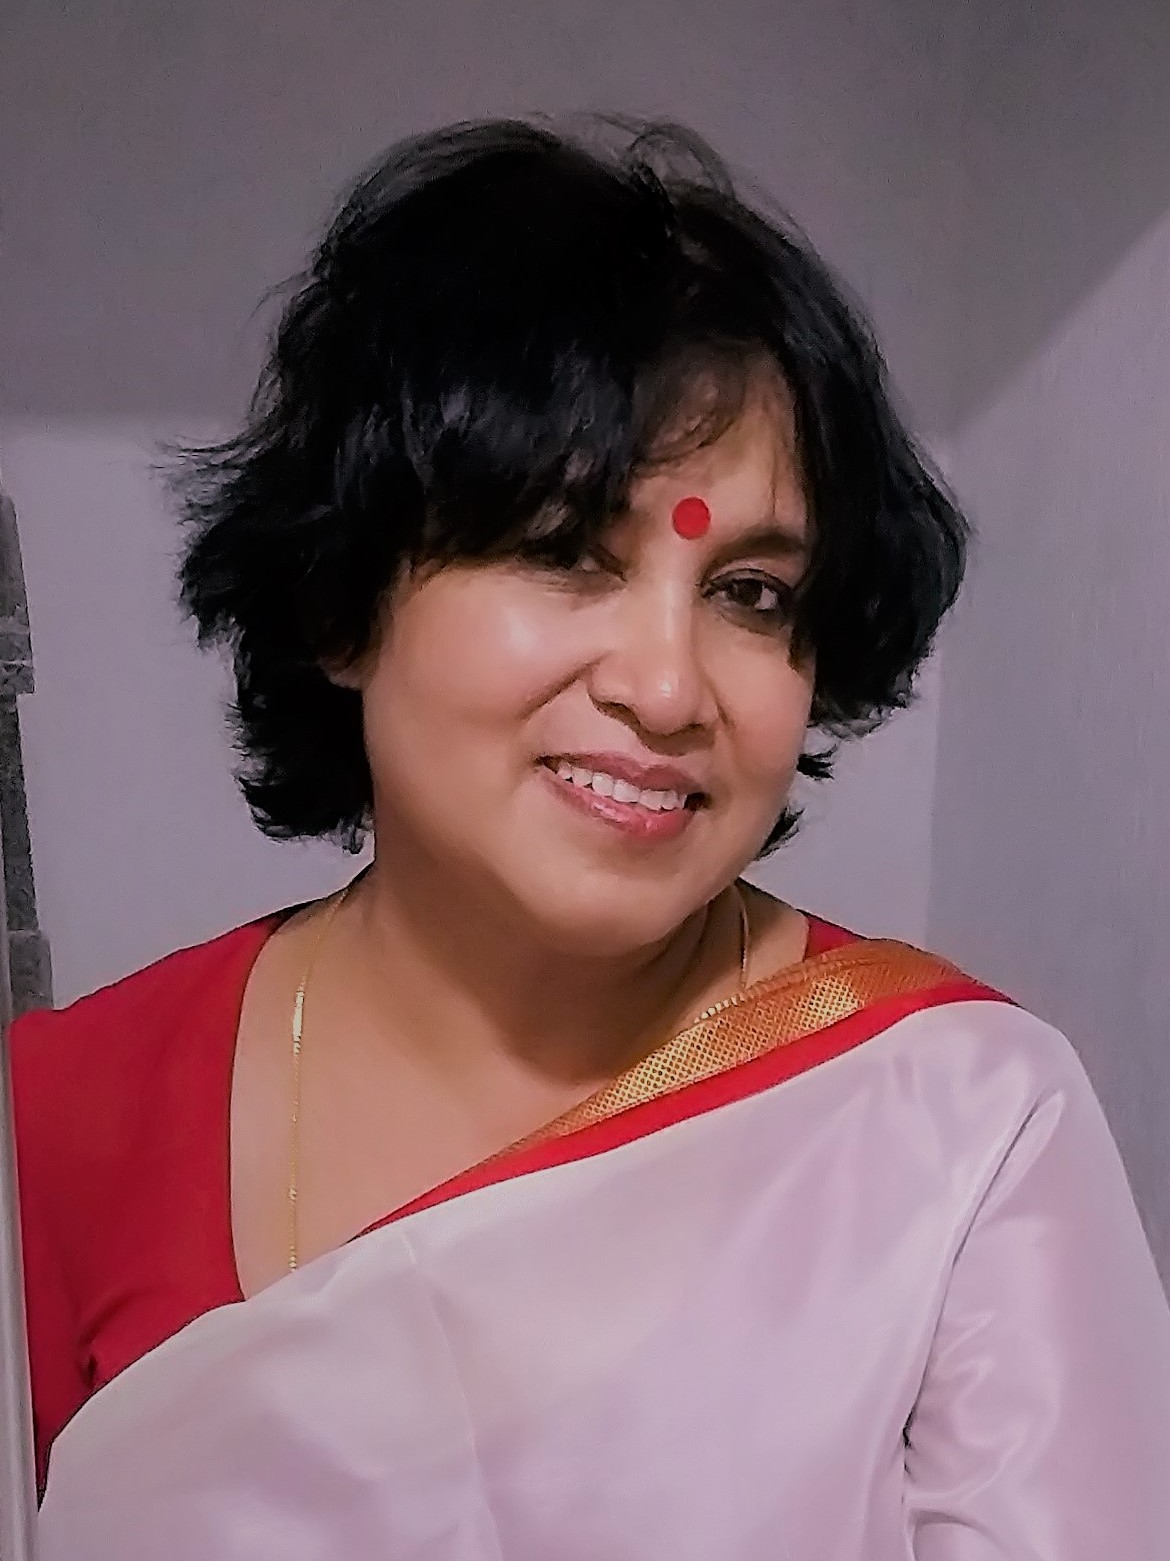 Taslima nasreen | लेखिका तस्लिमा नसरीन यांचे वक्तव्य चर्चेत!